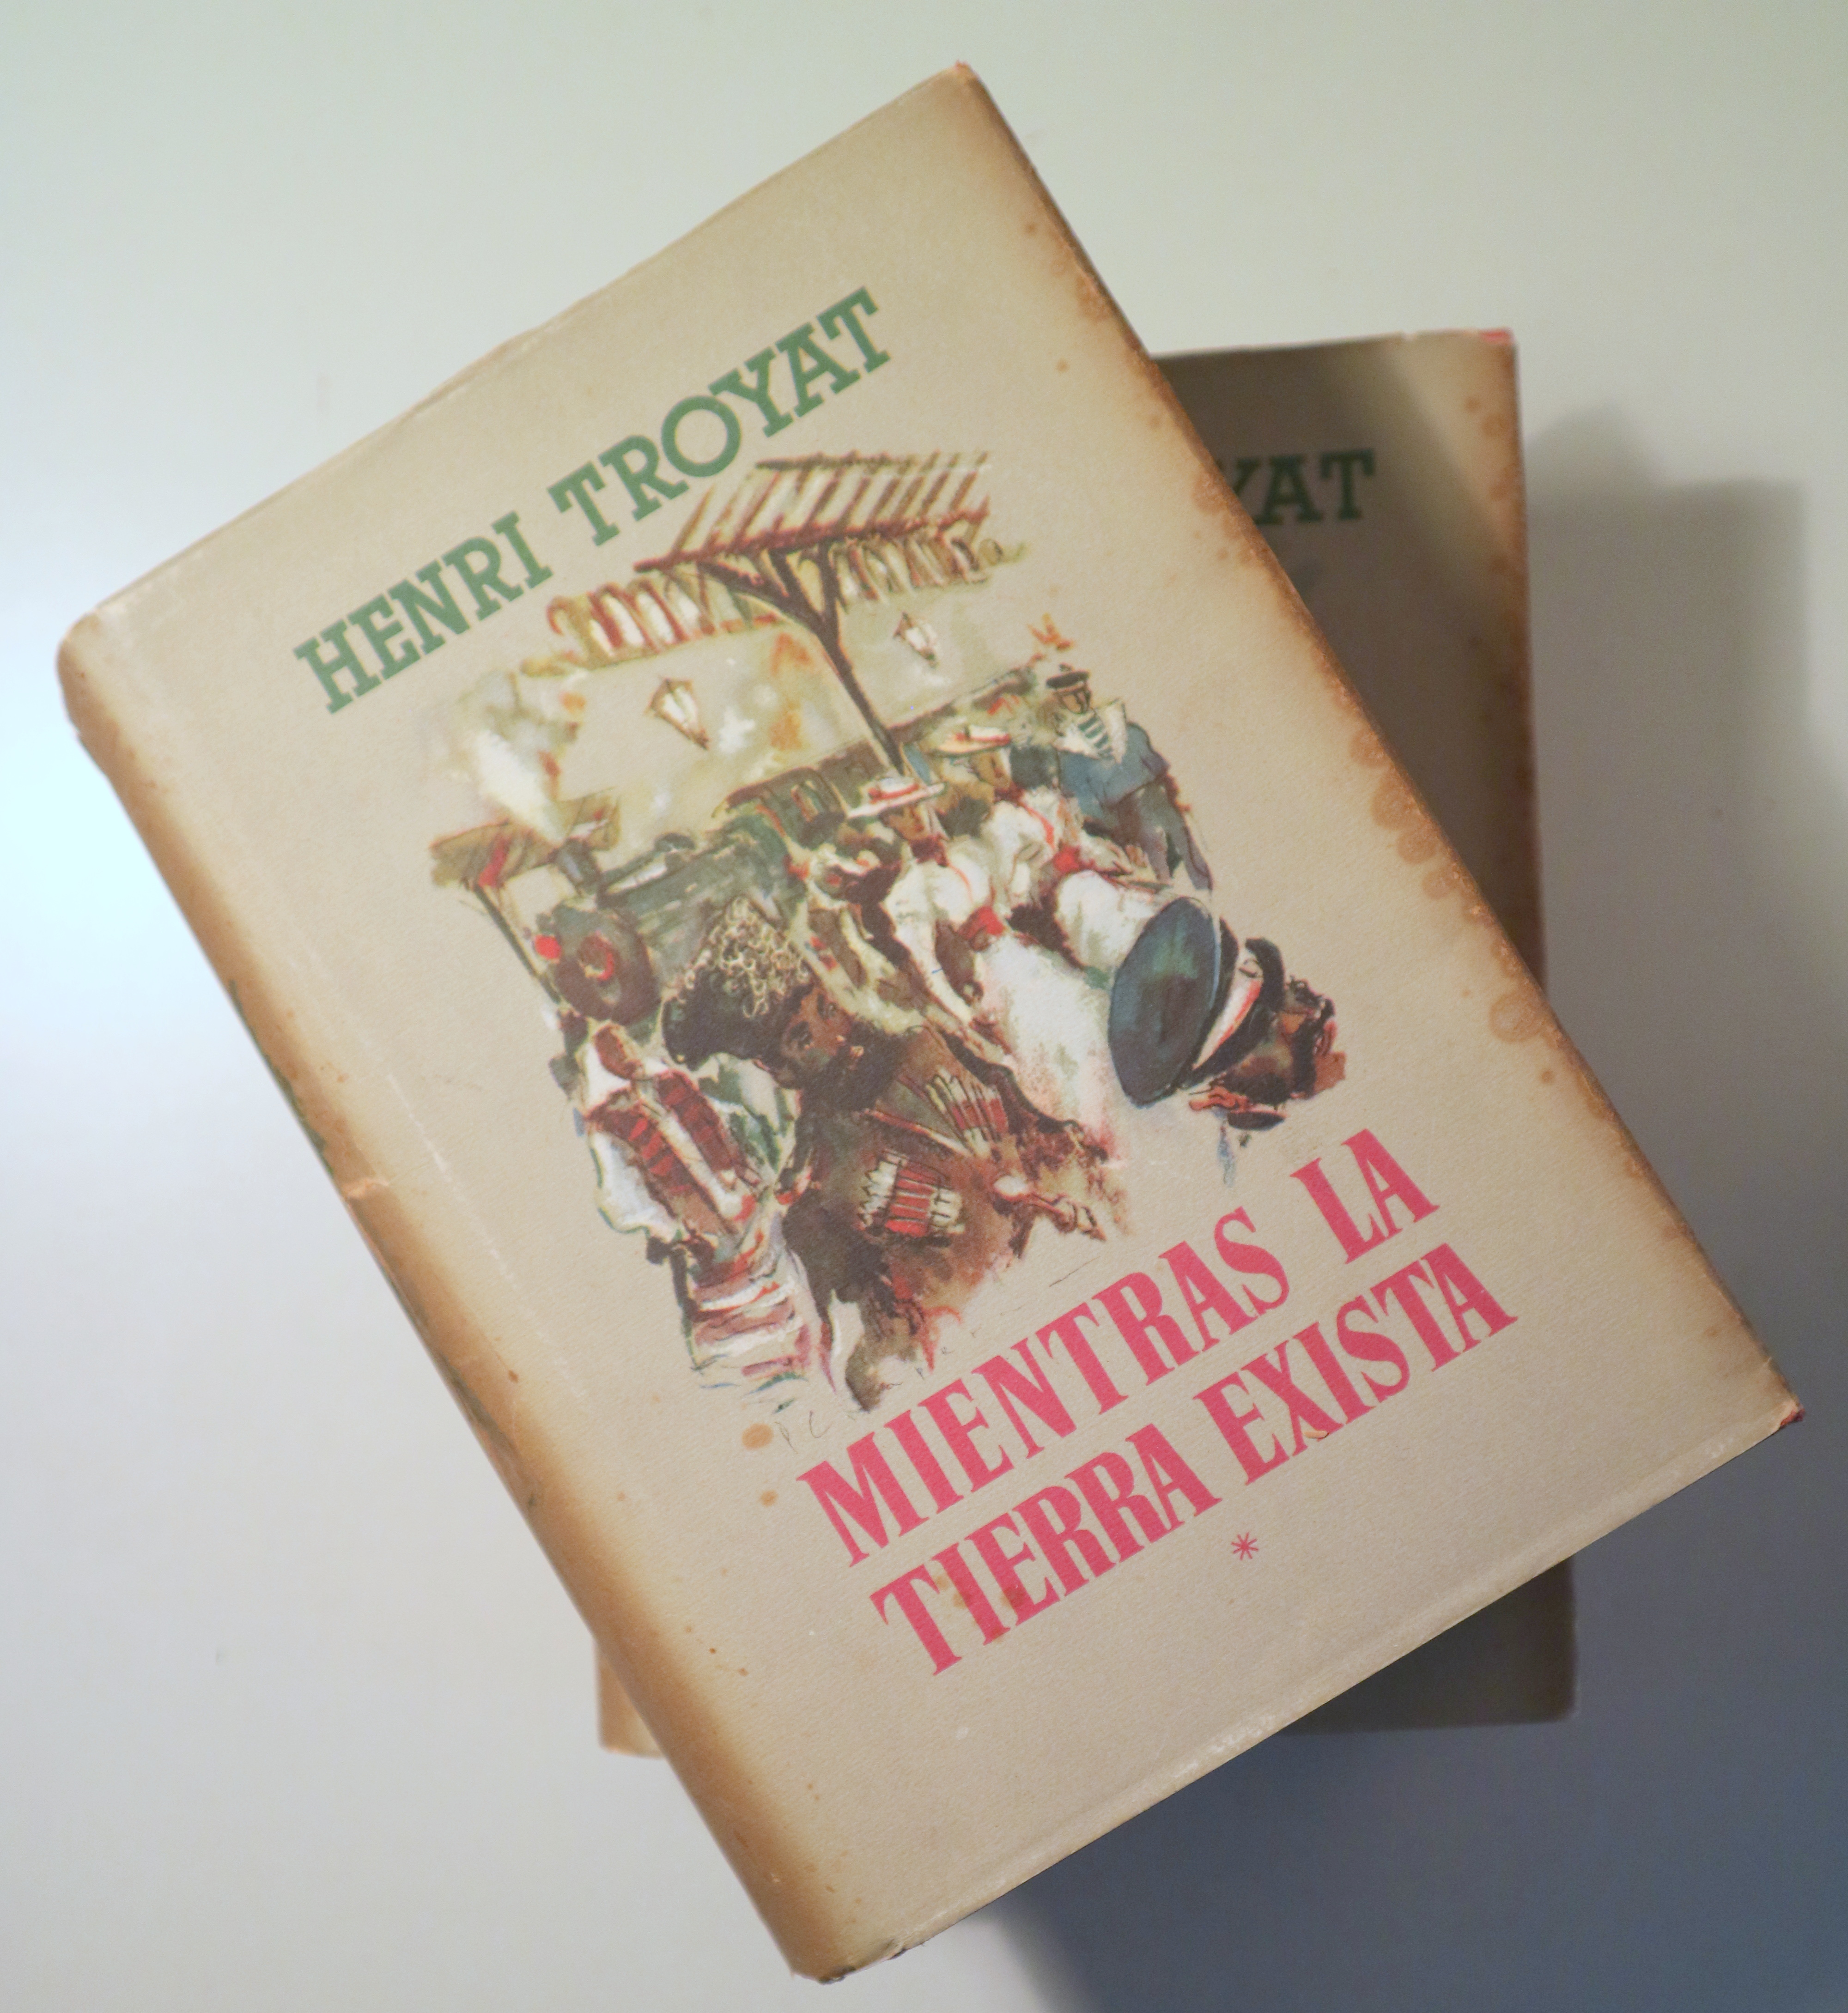 MIENTRAS LA TIERRA EXISTA (2 vol. - Completo) - Barcelona 1951 - 1ª edición en español